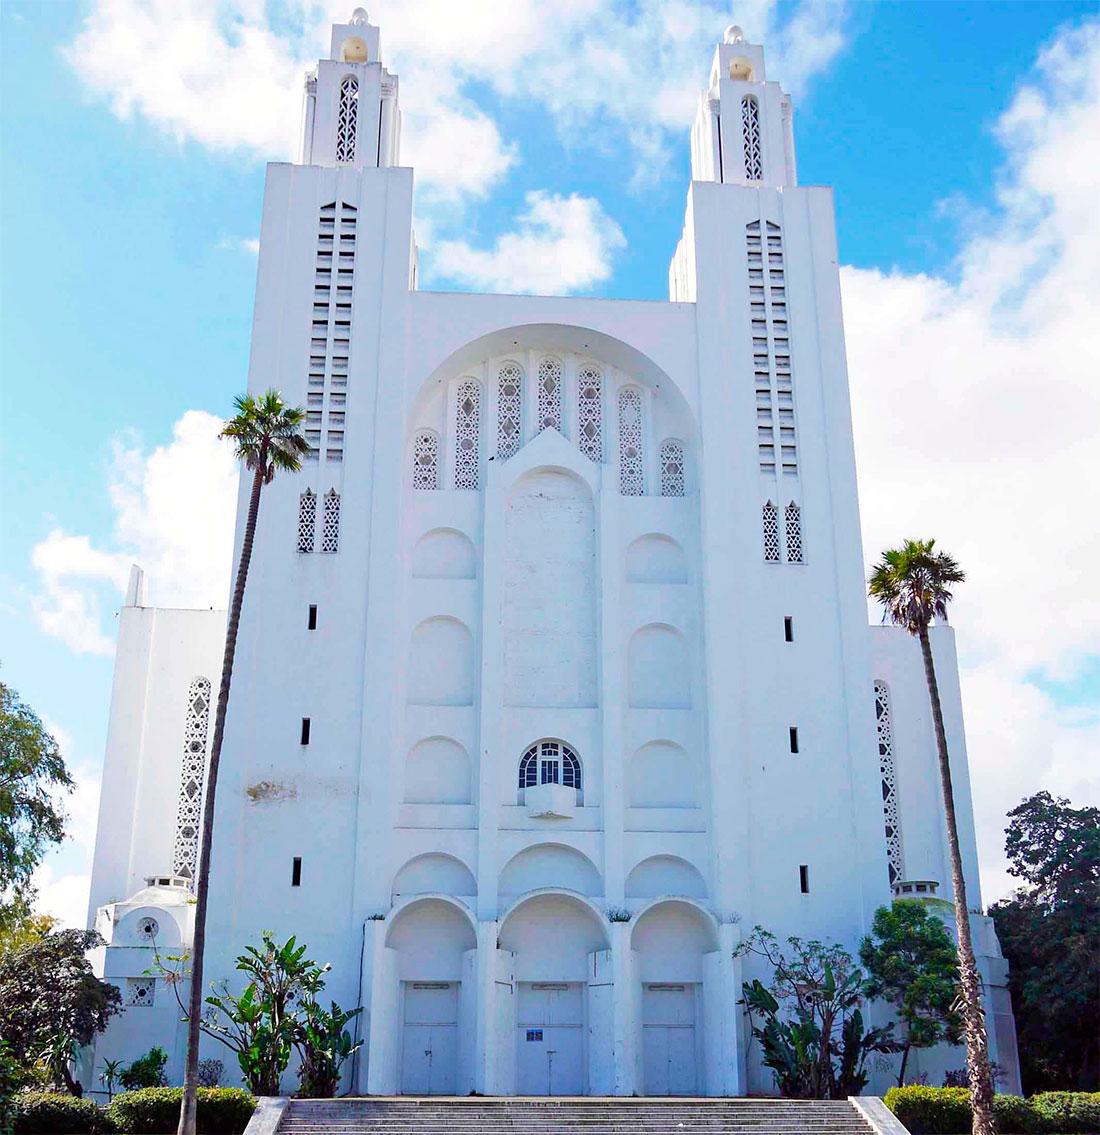 Собор Святого Сердца (Кафедральный собор Касабланки)